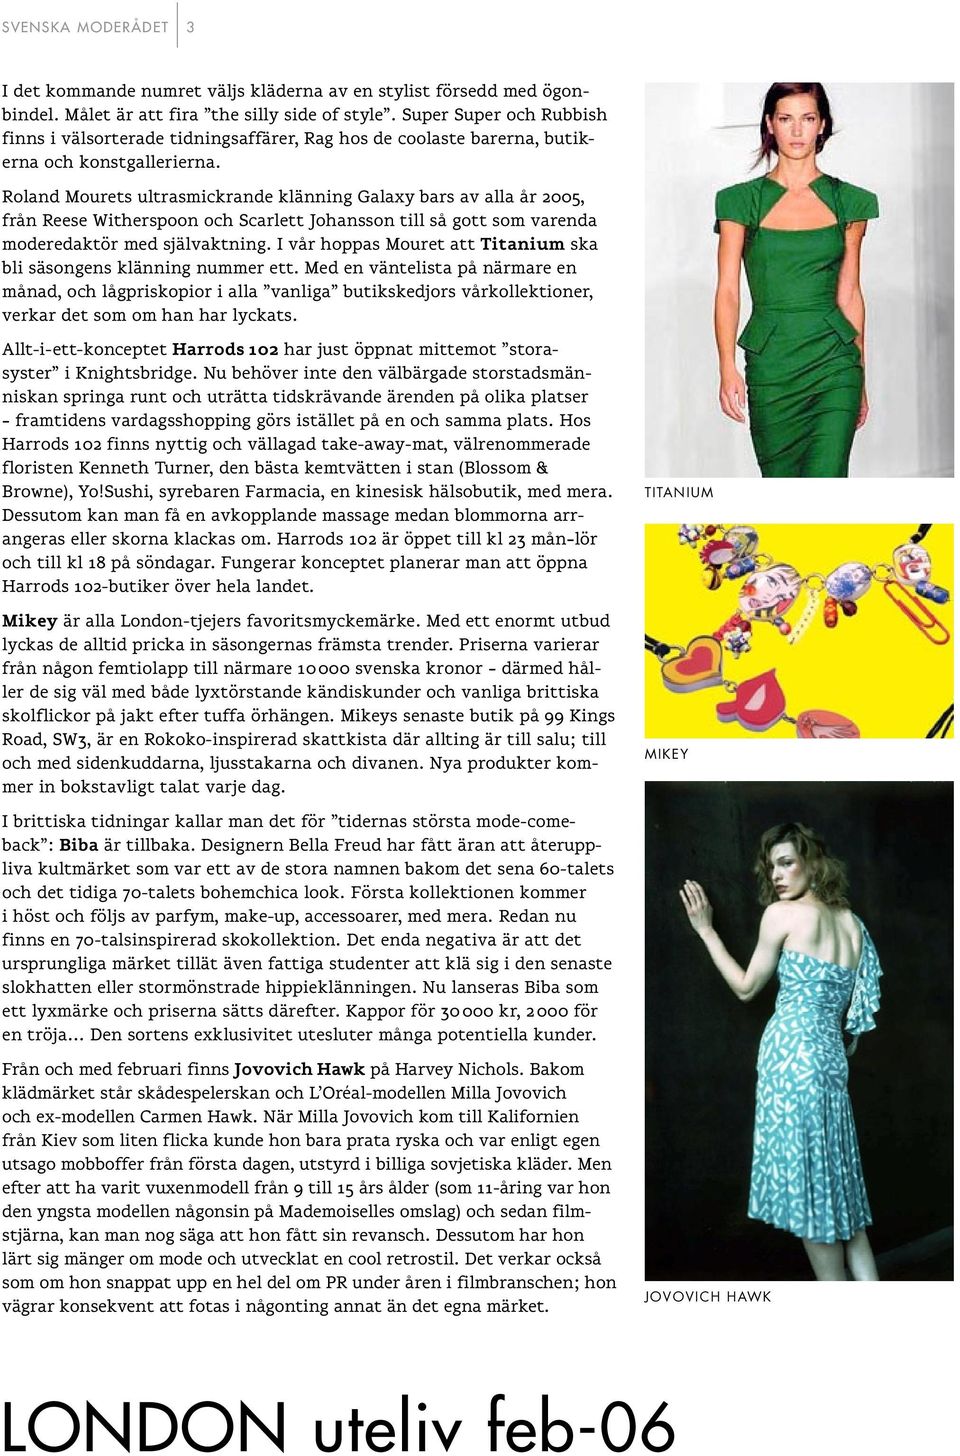 Roland Mourets ultrasmickrande klänning Galaxy bars av alla år 2005, från Reese Witherspoon och Scarlett Johansson till så gott som varenda moderedaktör med självaktning.